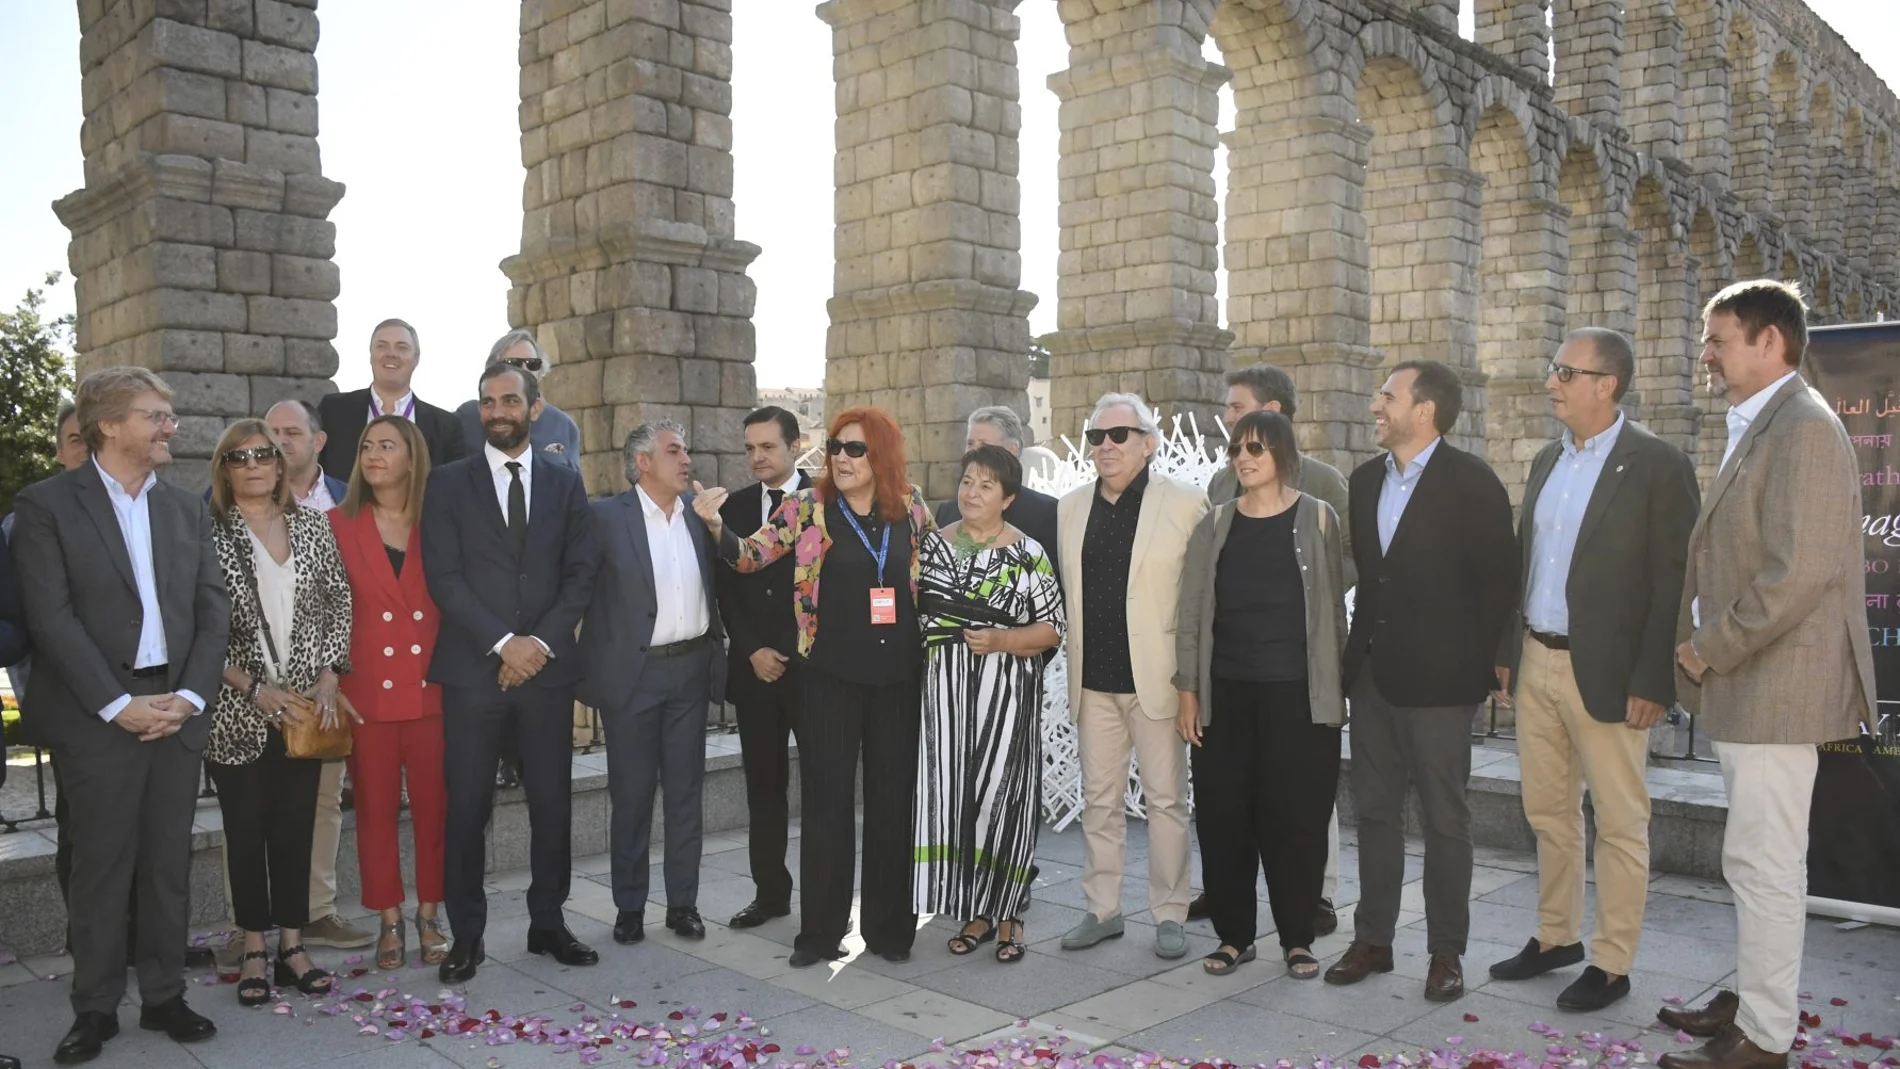 La alcaldesa de Segovia, Clara Luquero, inaugura las exposiciones del Hay Festival 2019